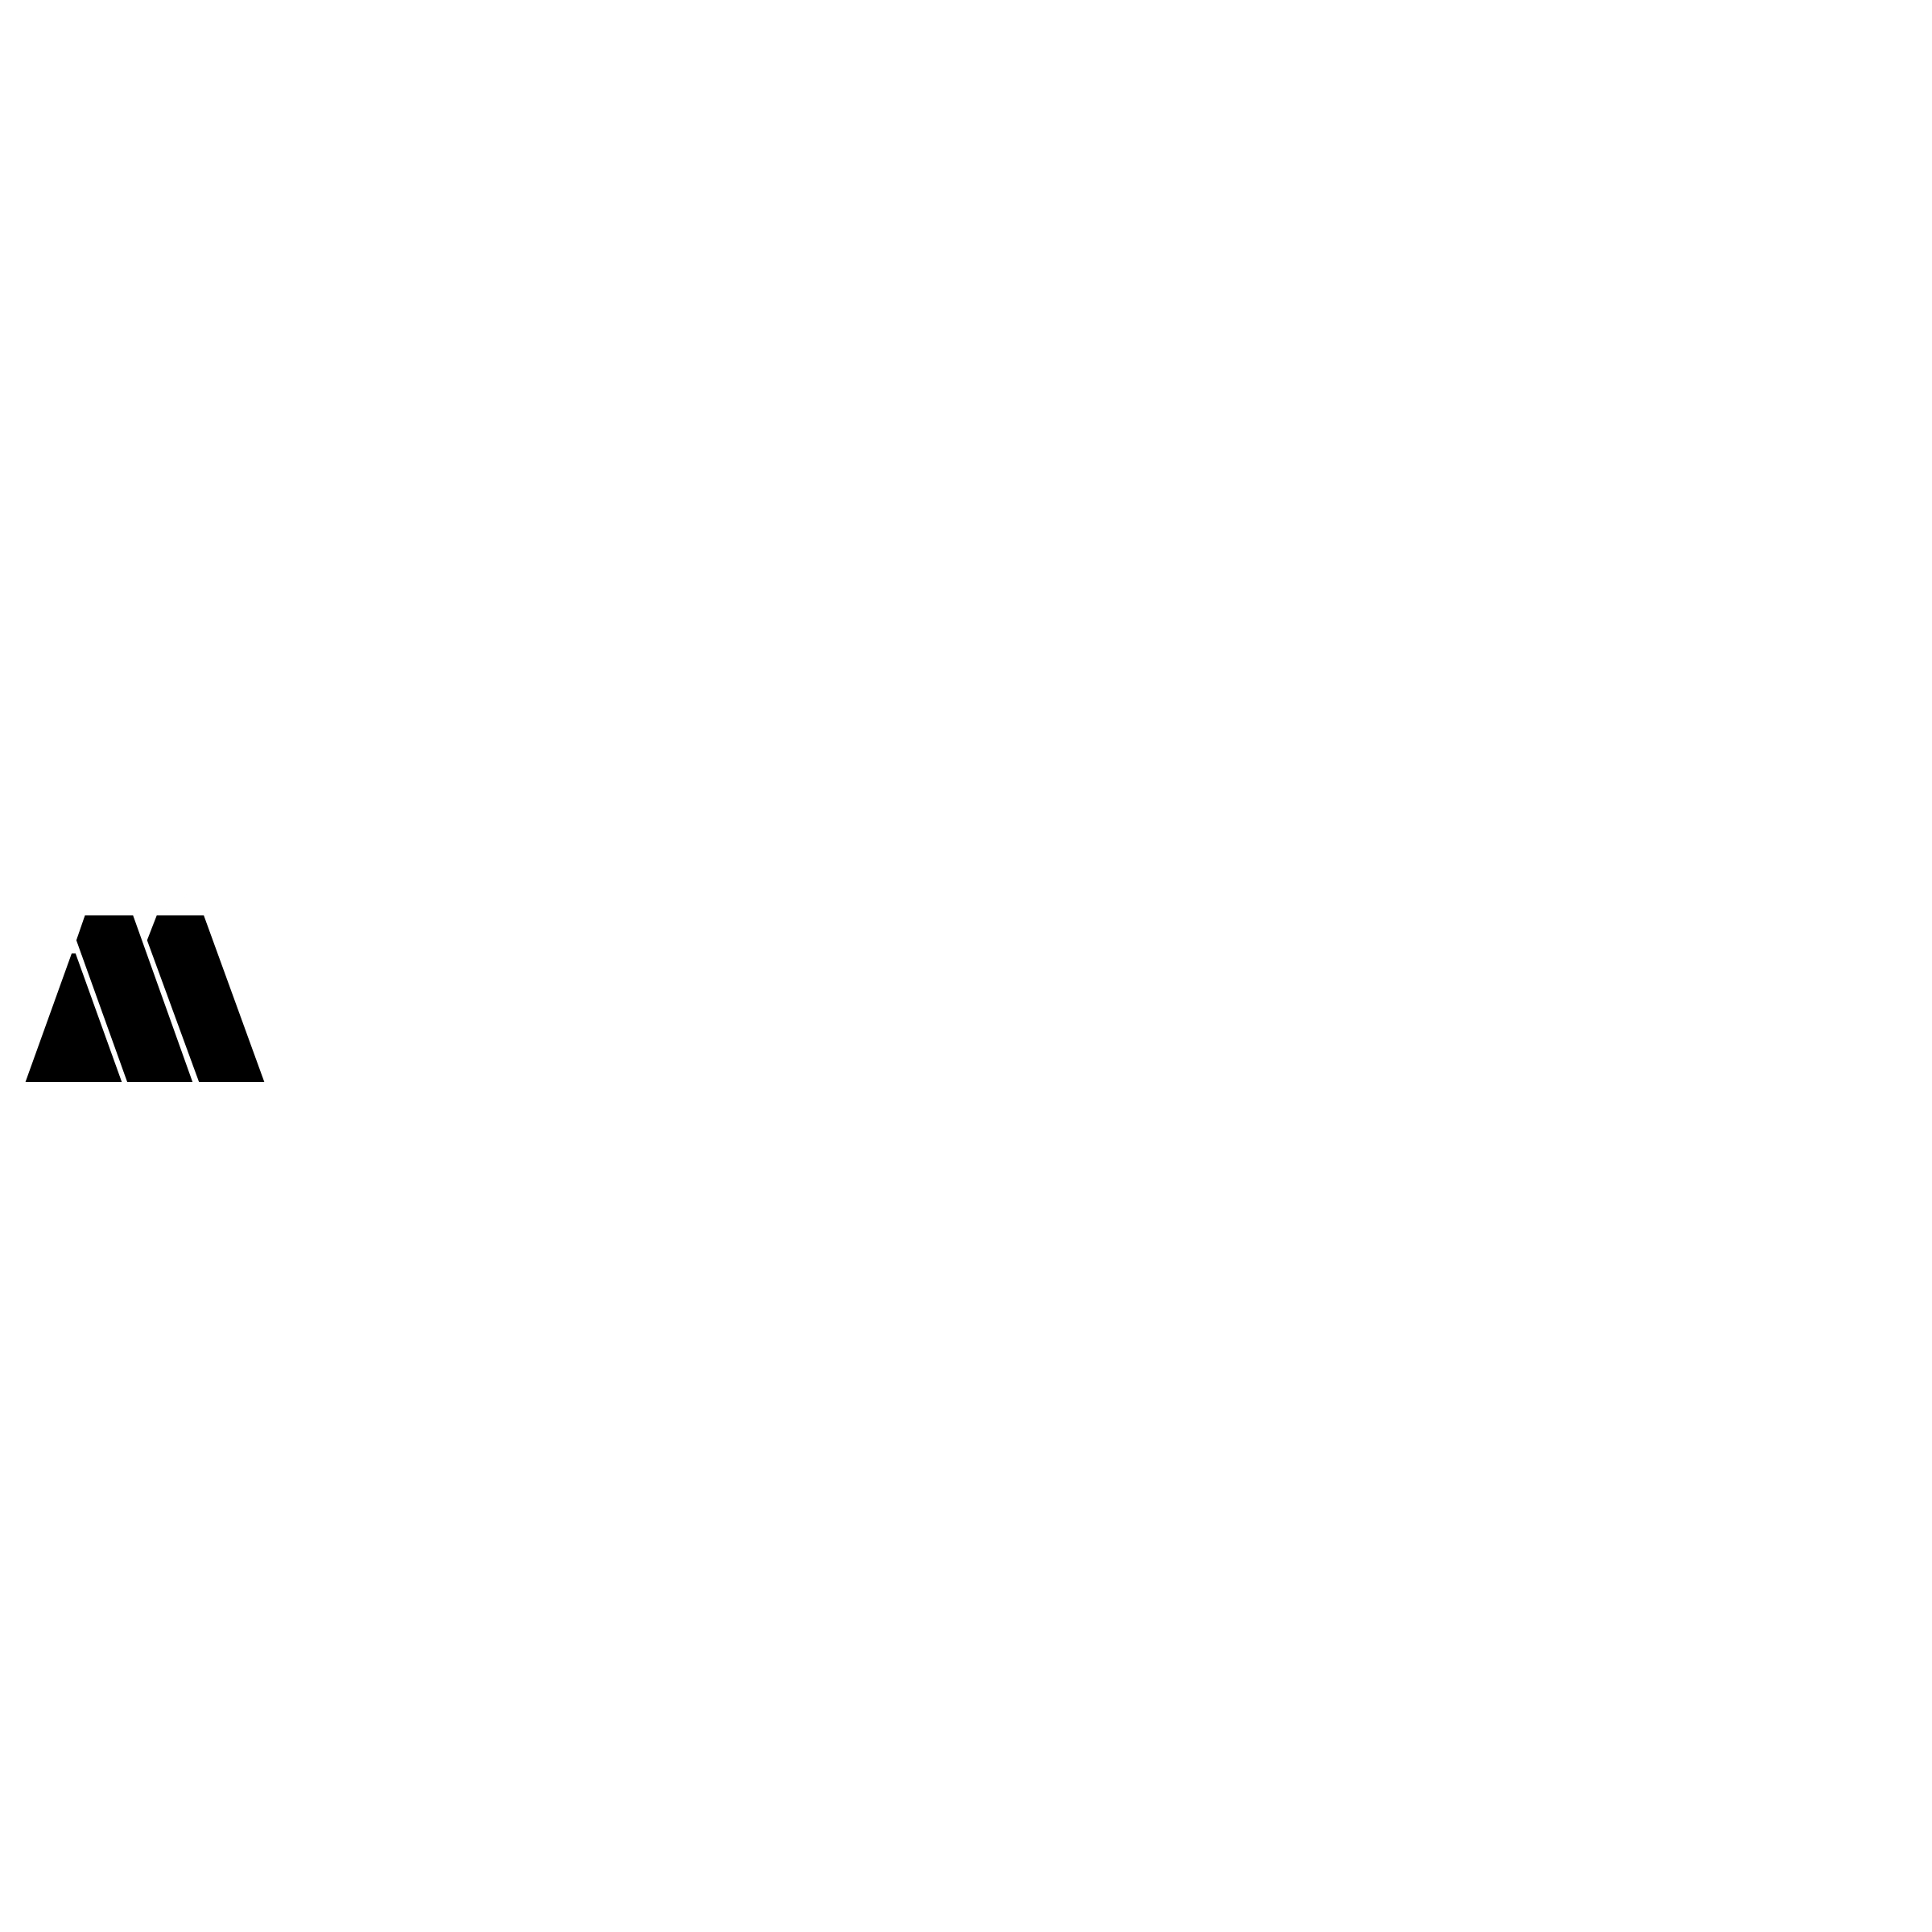 Steyr Logo - Magna Steyr Logo PNG Transparent & SVG Vector - Freebie Supply